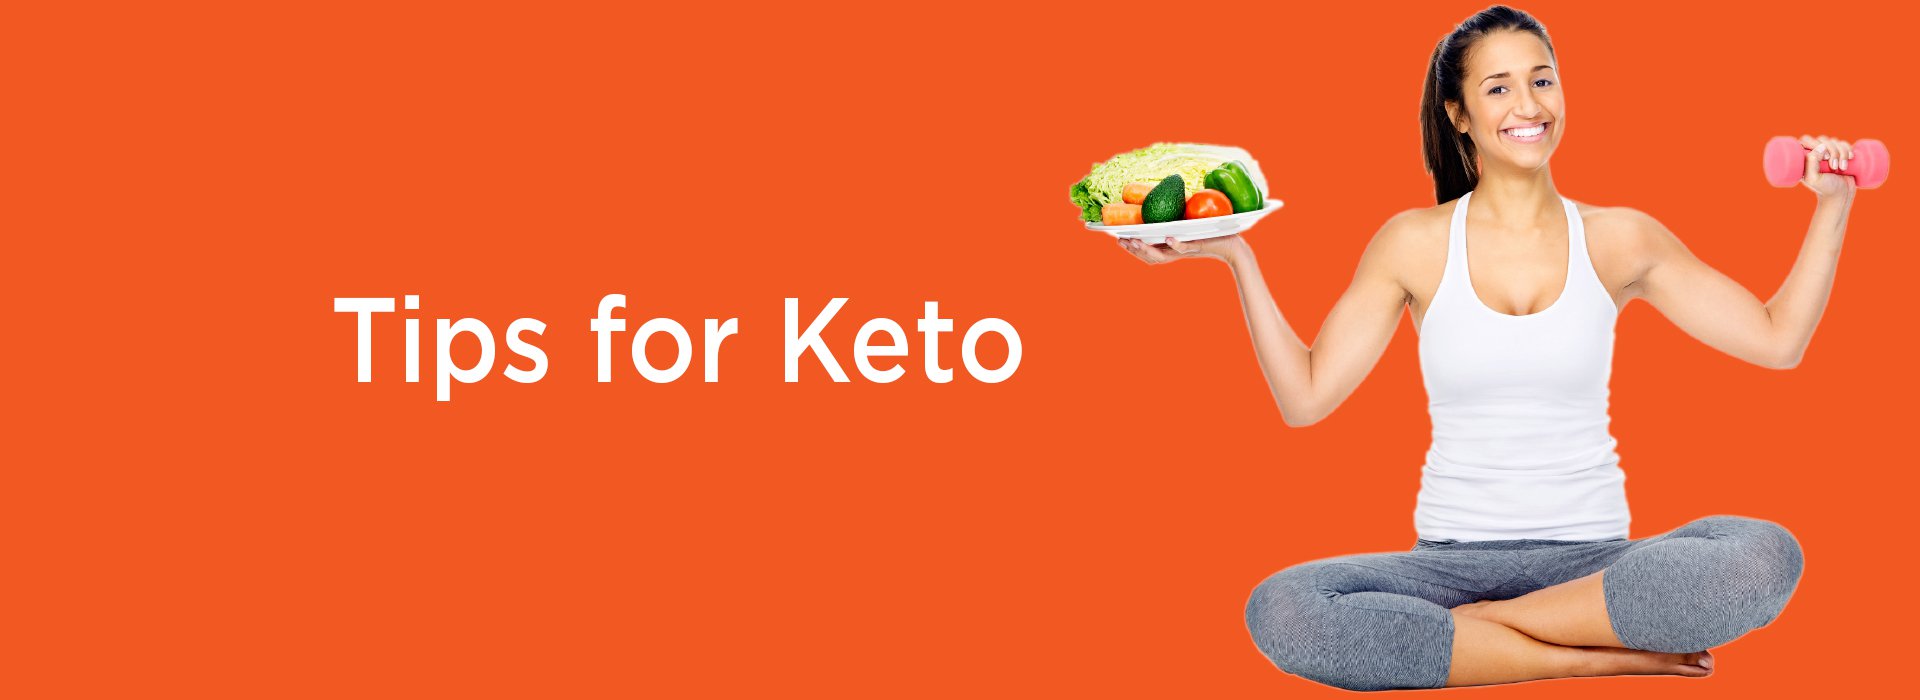 New Image International:Tips For Keto